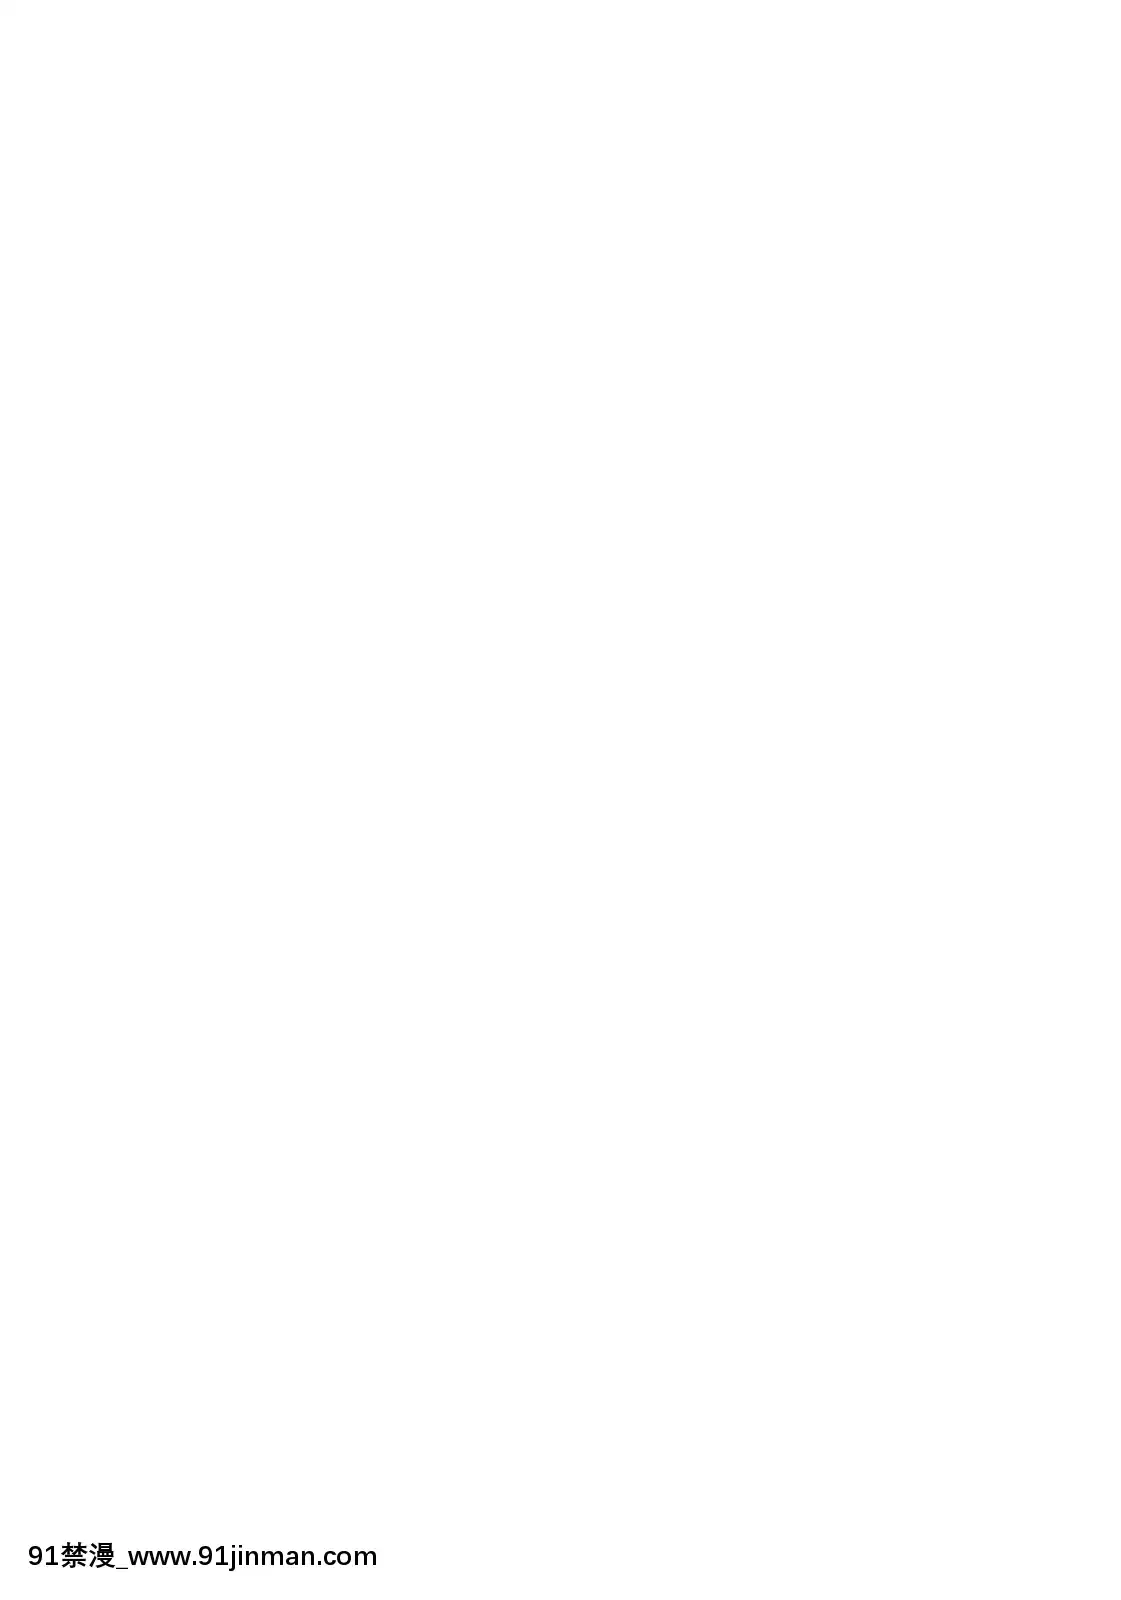 【truyện tranh dòng sông huyền bí tập 9】(成年コミック)[雑誌]COMIC快楽天2008年04月号   (Truyện tranh dành cho người lớn) COMIC Kairakuten số tháng 4 năm 2008